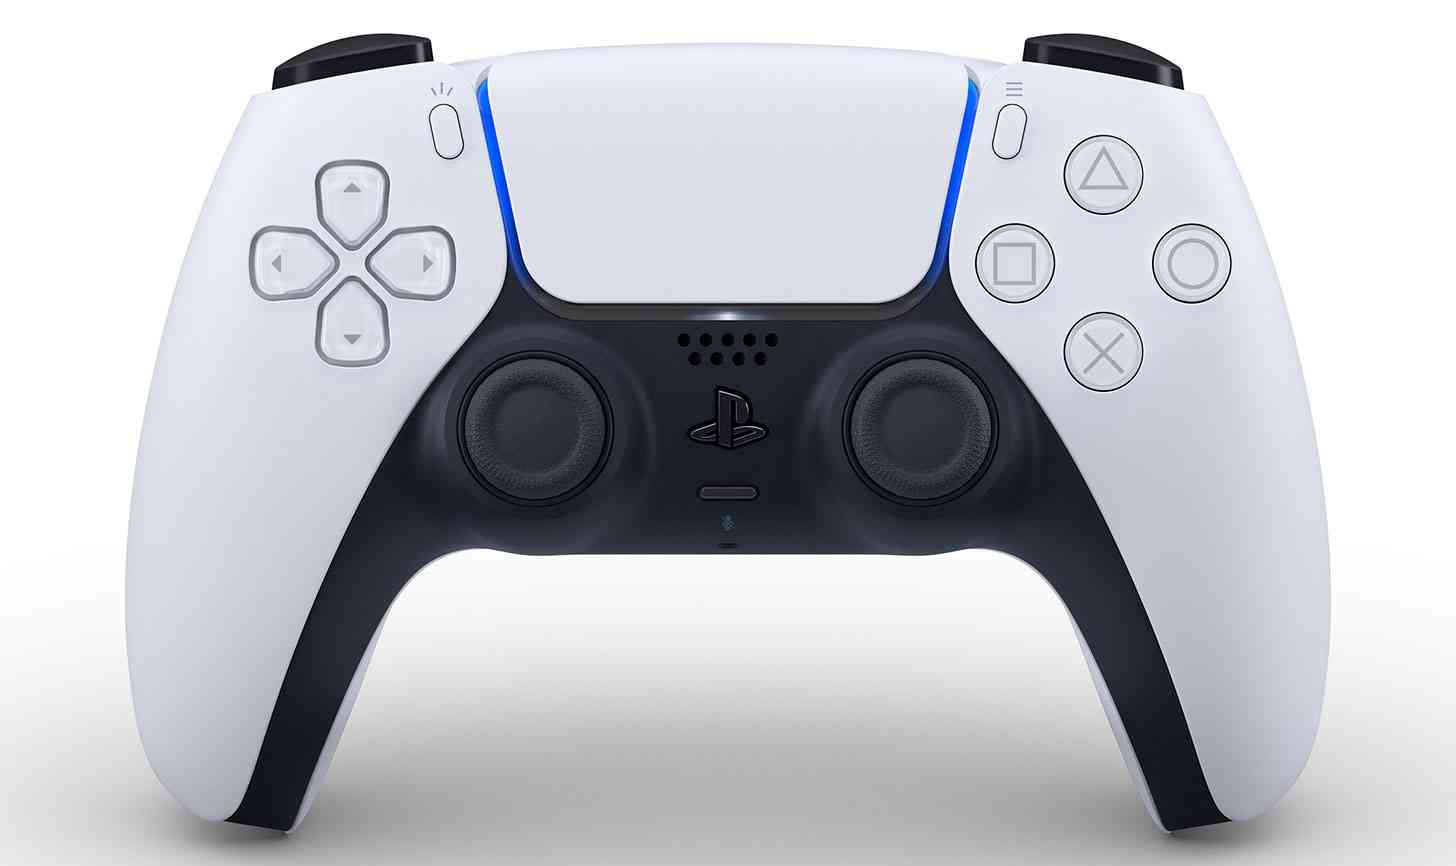 PS5 DualSense controller